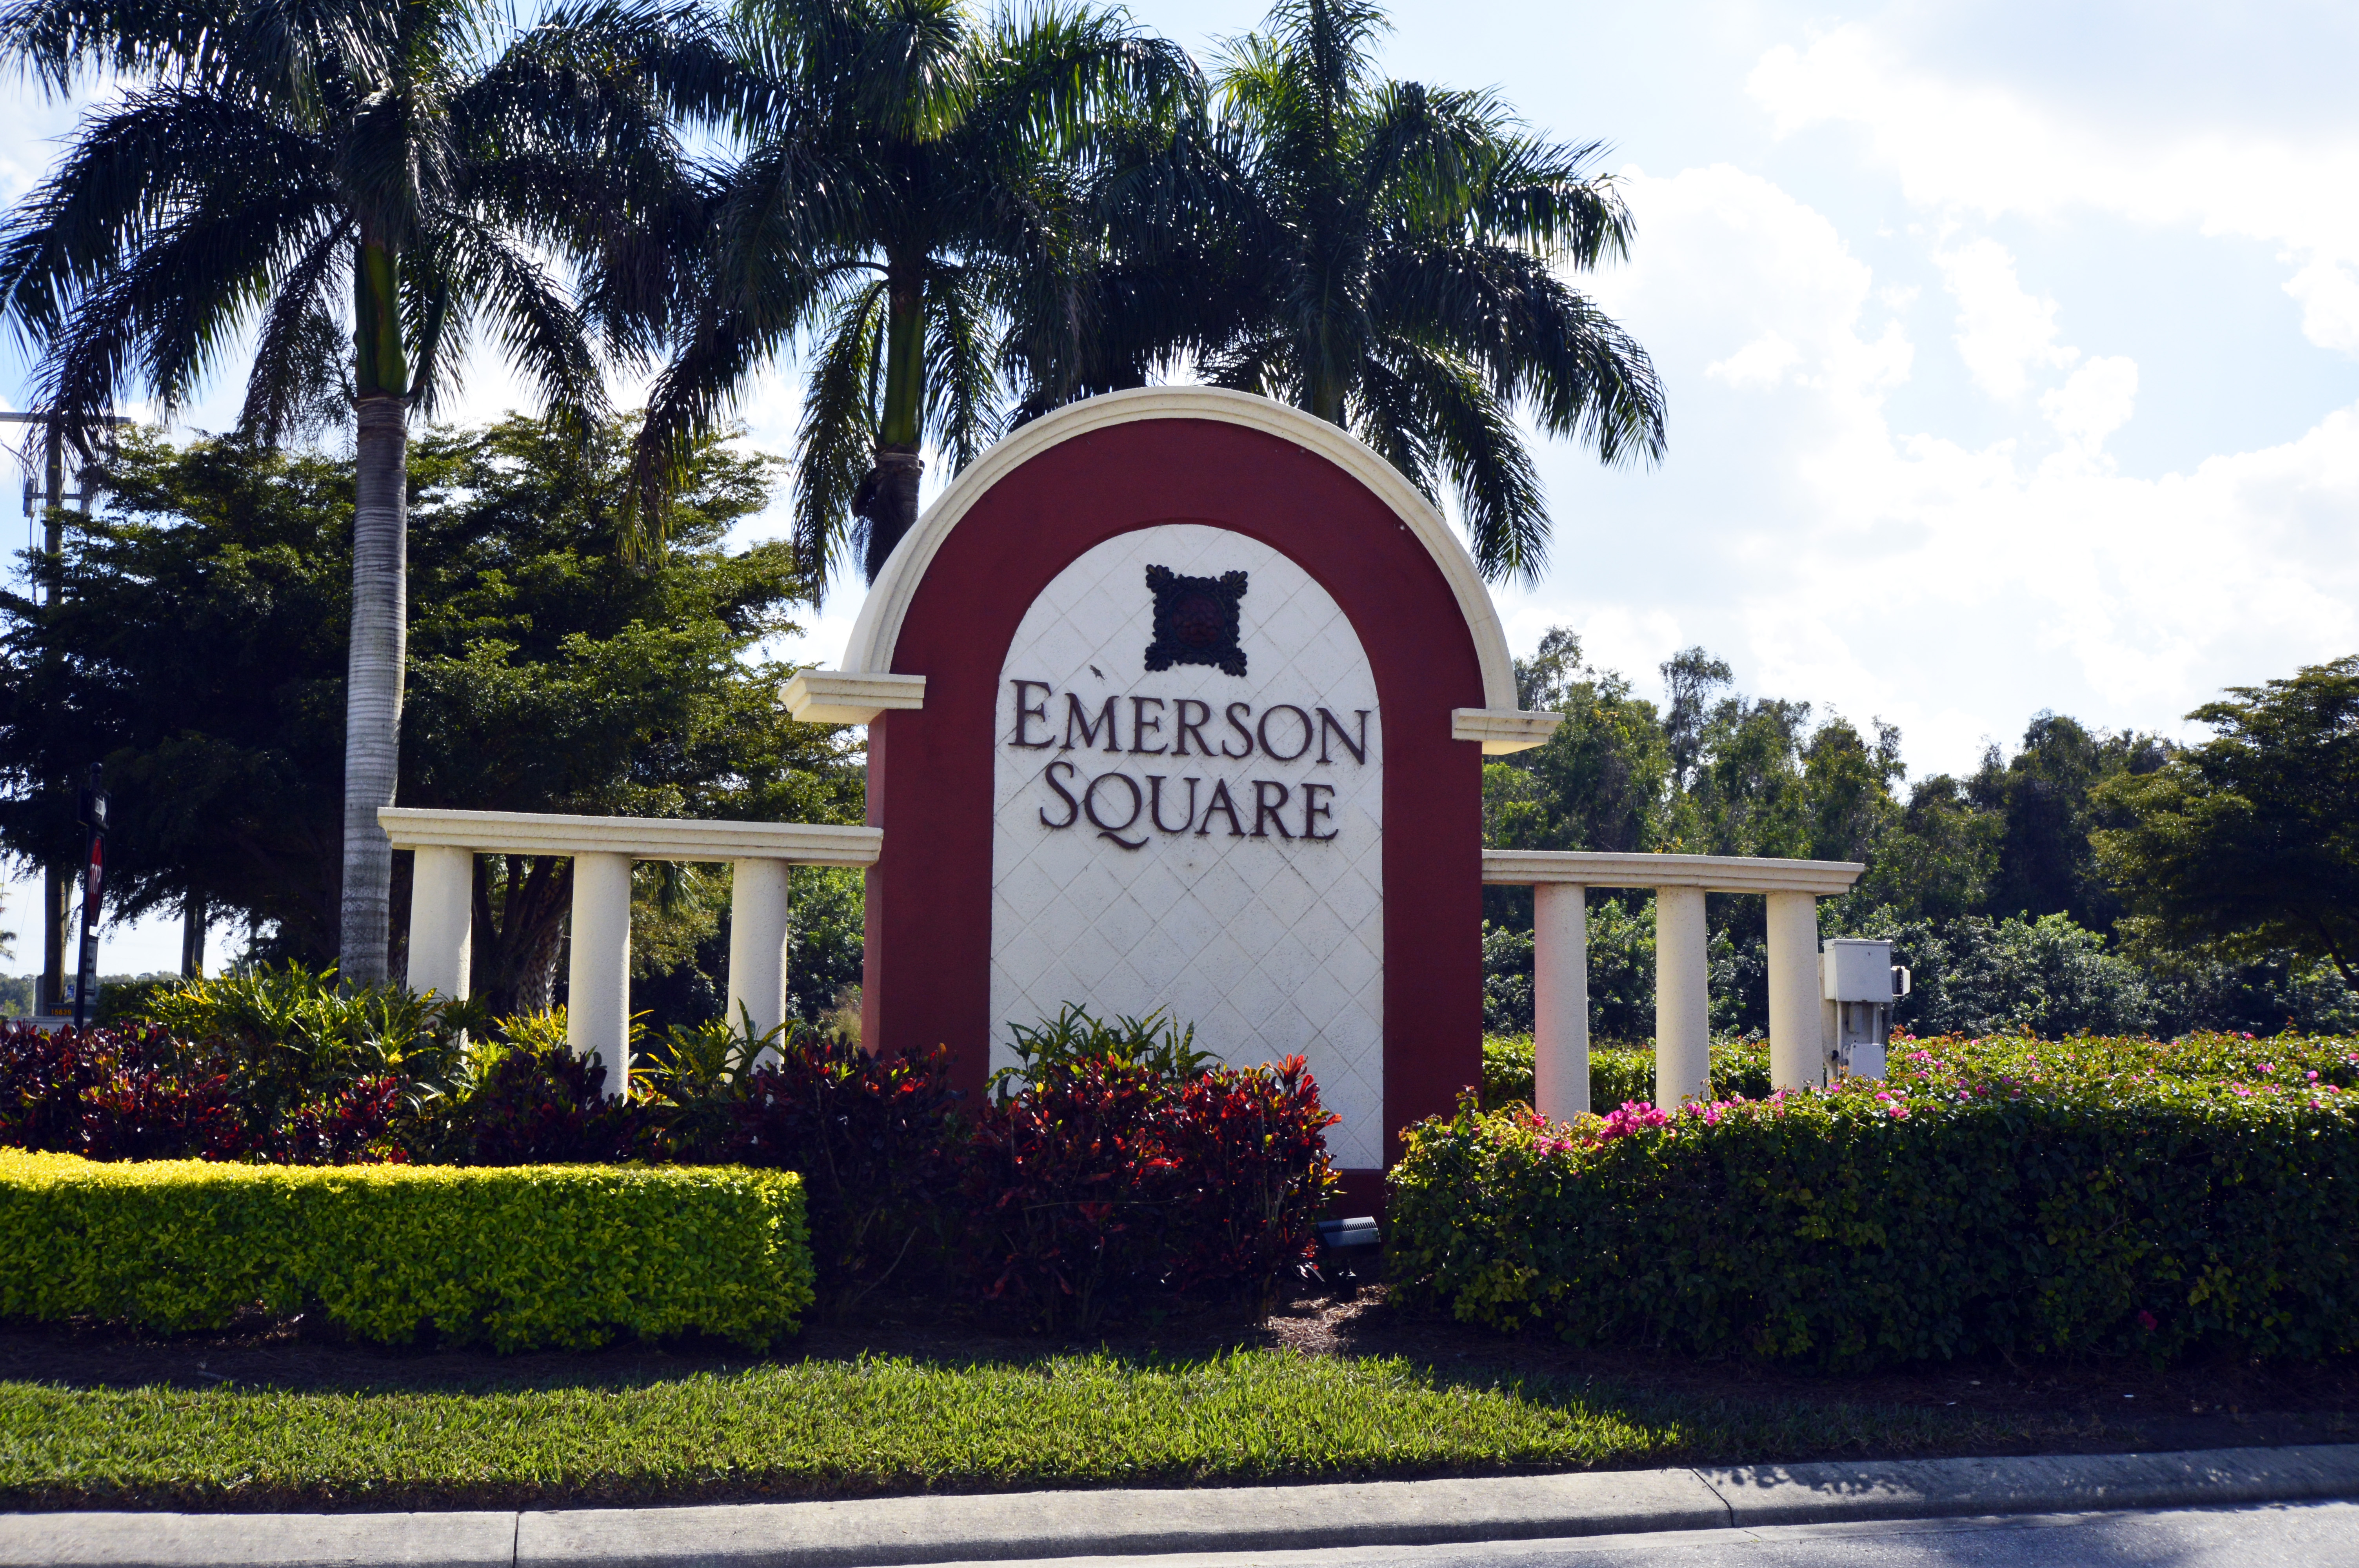 Emerson Square